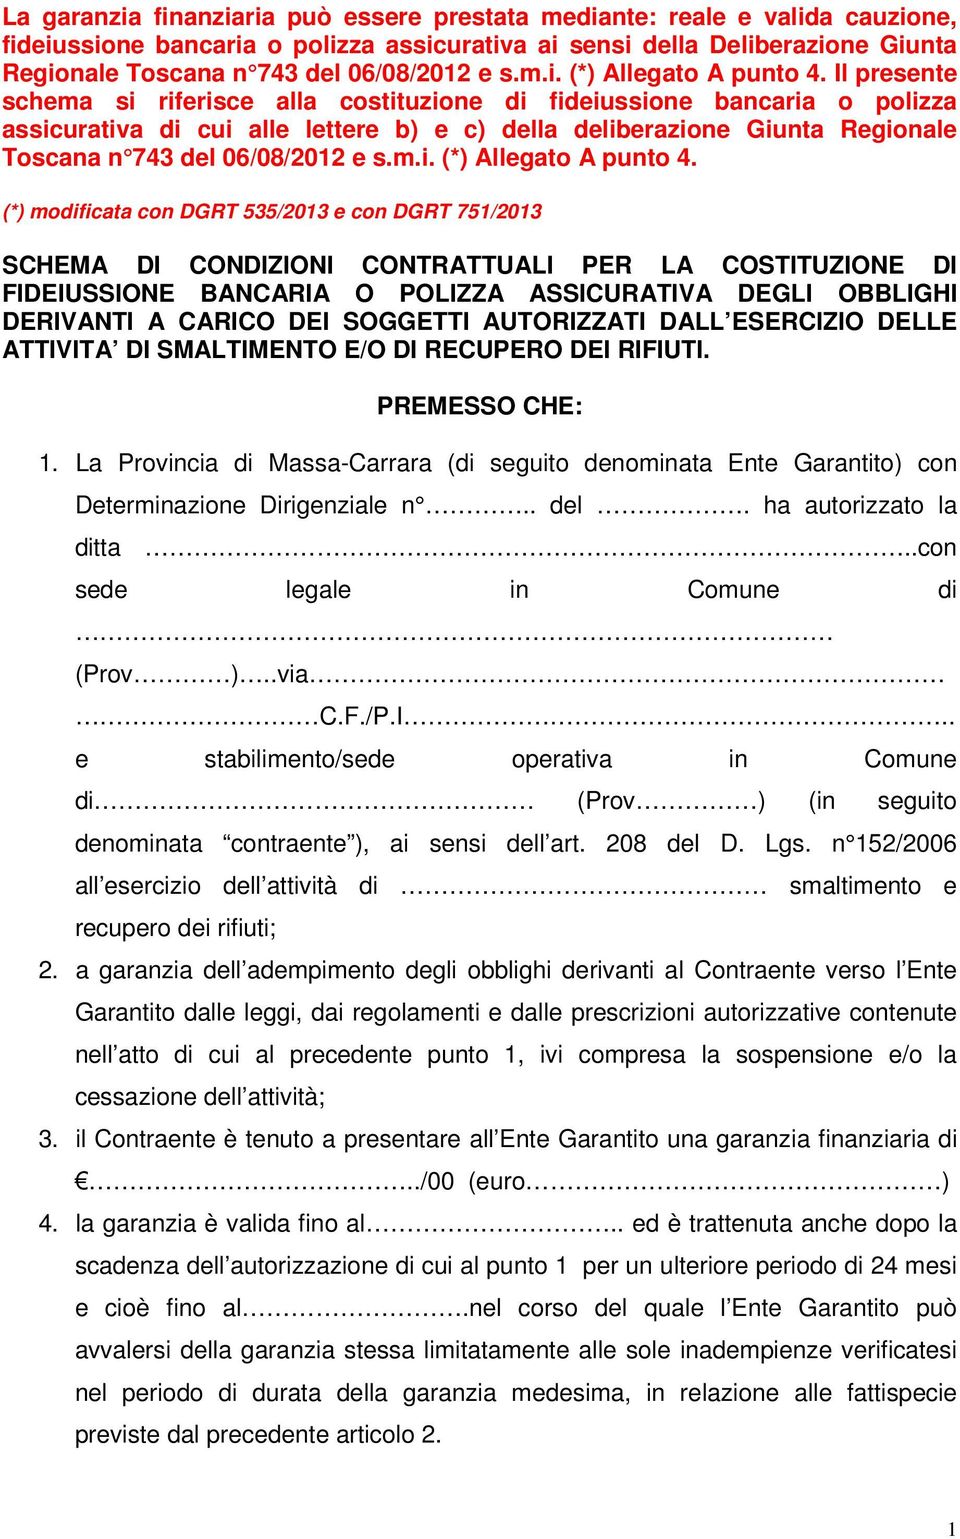 Il presente schema si riferisce alla costituzione di fideiussione bancaria o polizza assicurativa di cui alle lettere b) e c) della deliberazione Giunta Regionale Toscana n 743 del 06/08/2012  (*)